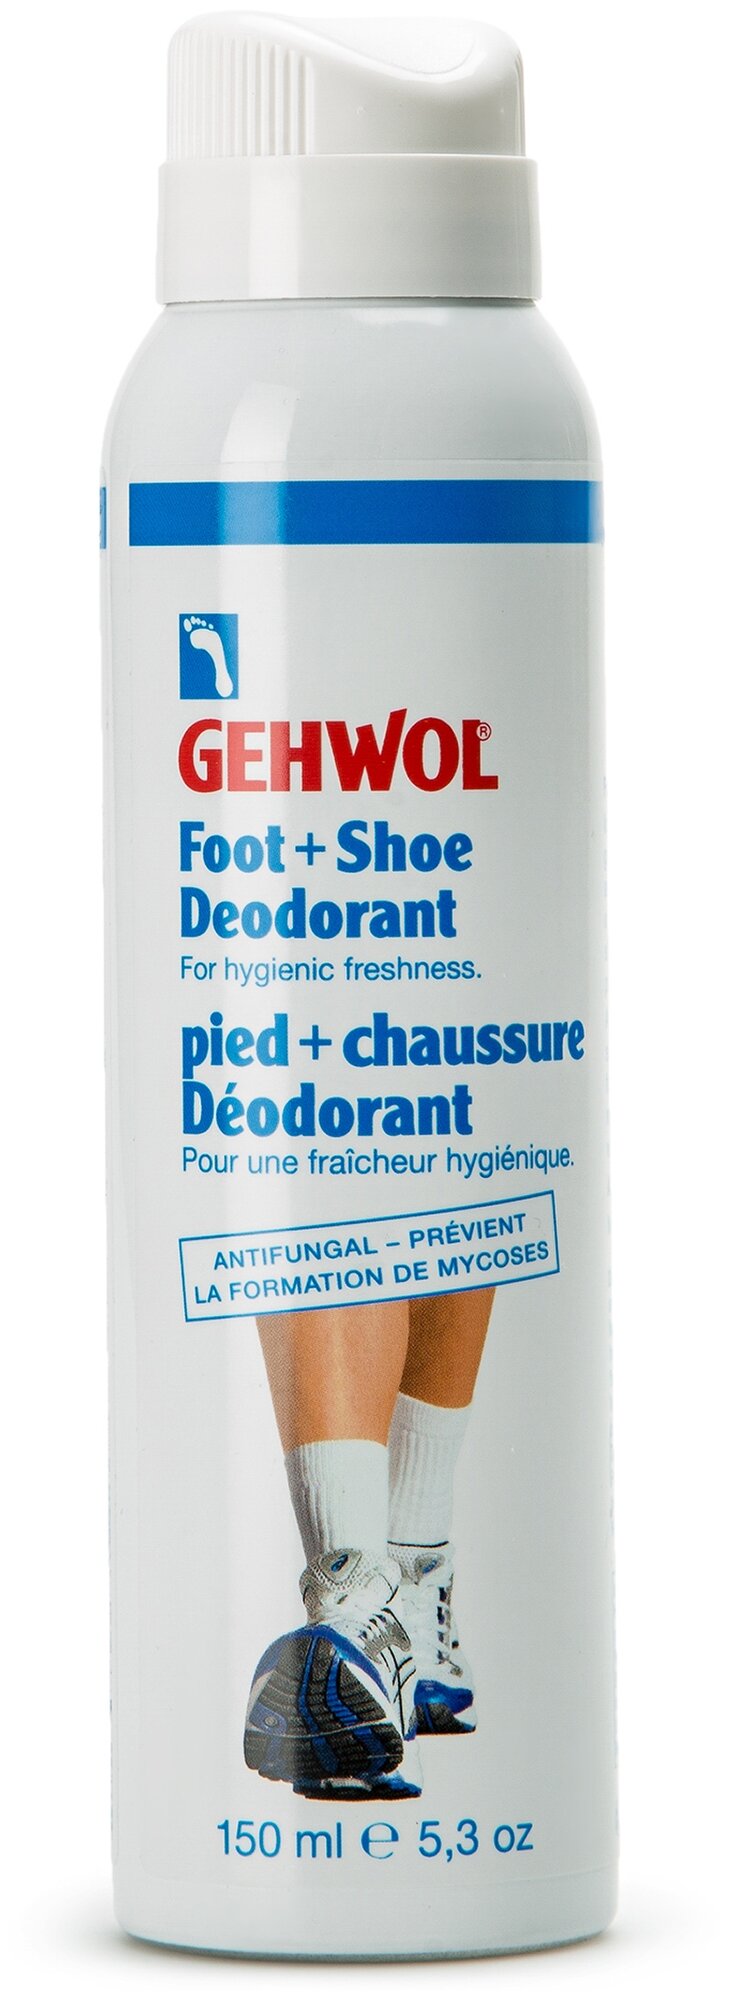 Дезодорант для ног и обуви от запаха и пота Геволь Gehwol от потливости, 150 мл (23608)